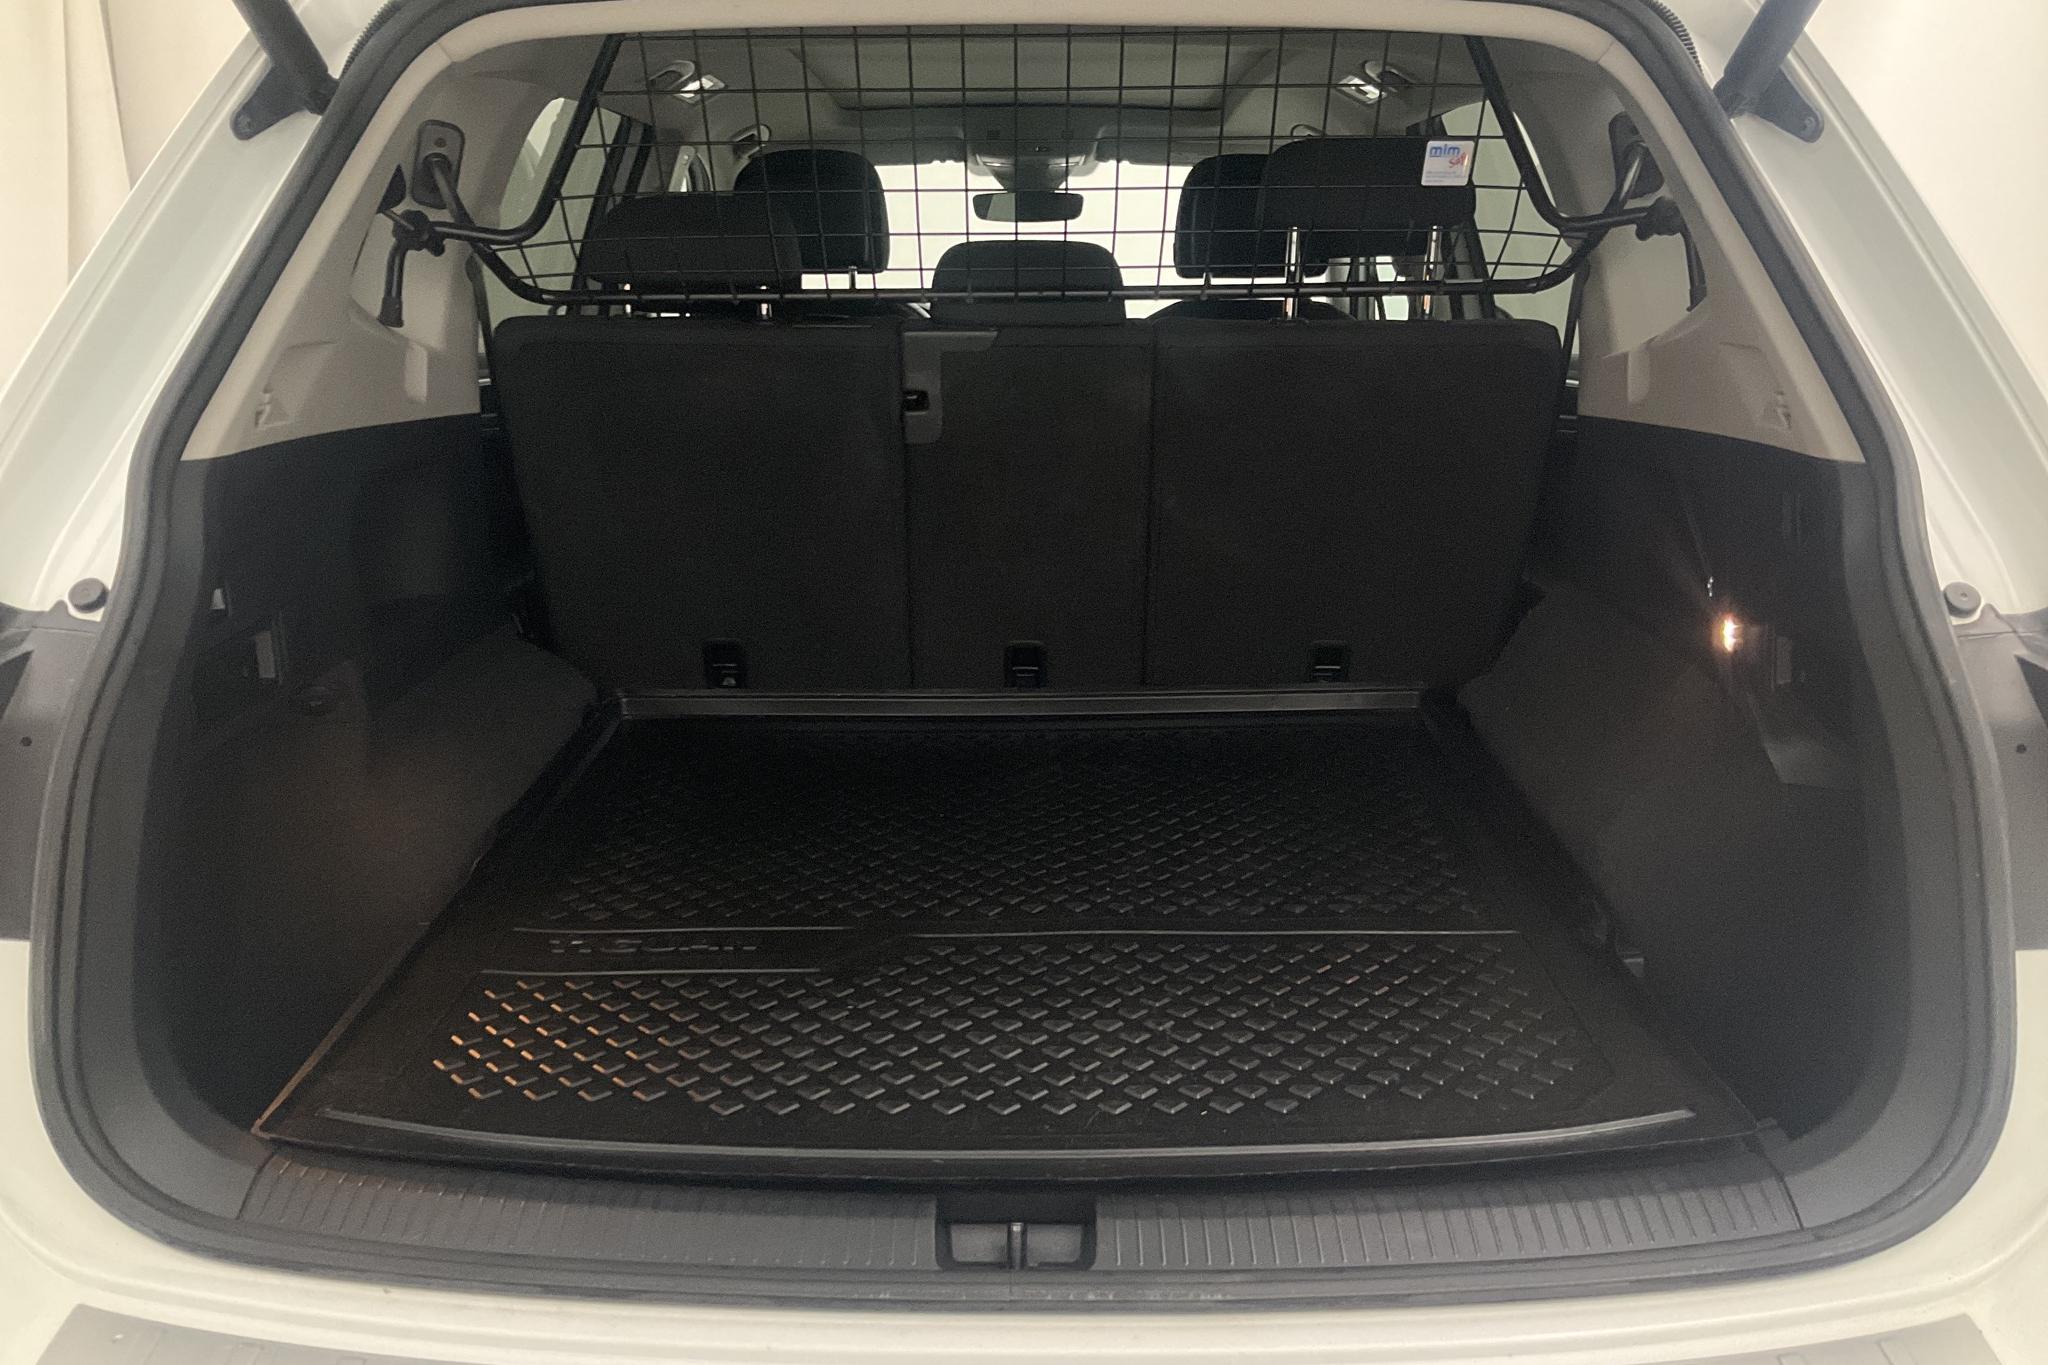 VW Tiguan Allspace 2.0 TSI 4MOTION (190hk) - 148 870 km - Automatic - white - 2019